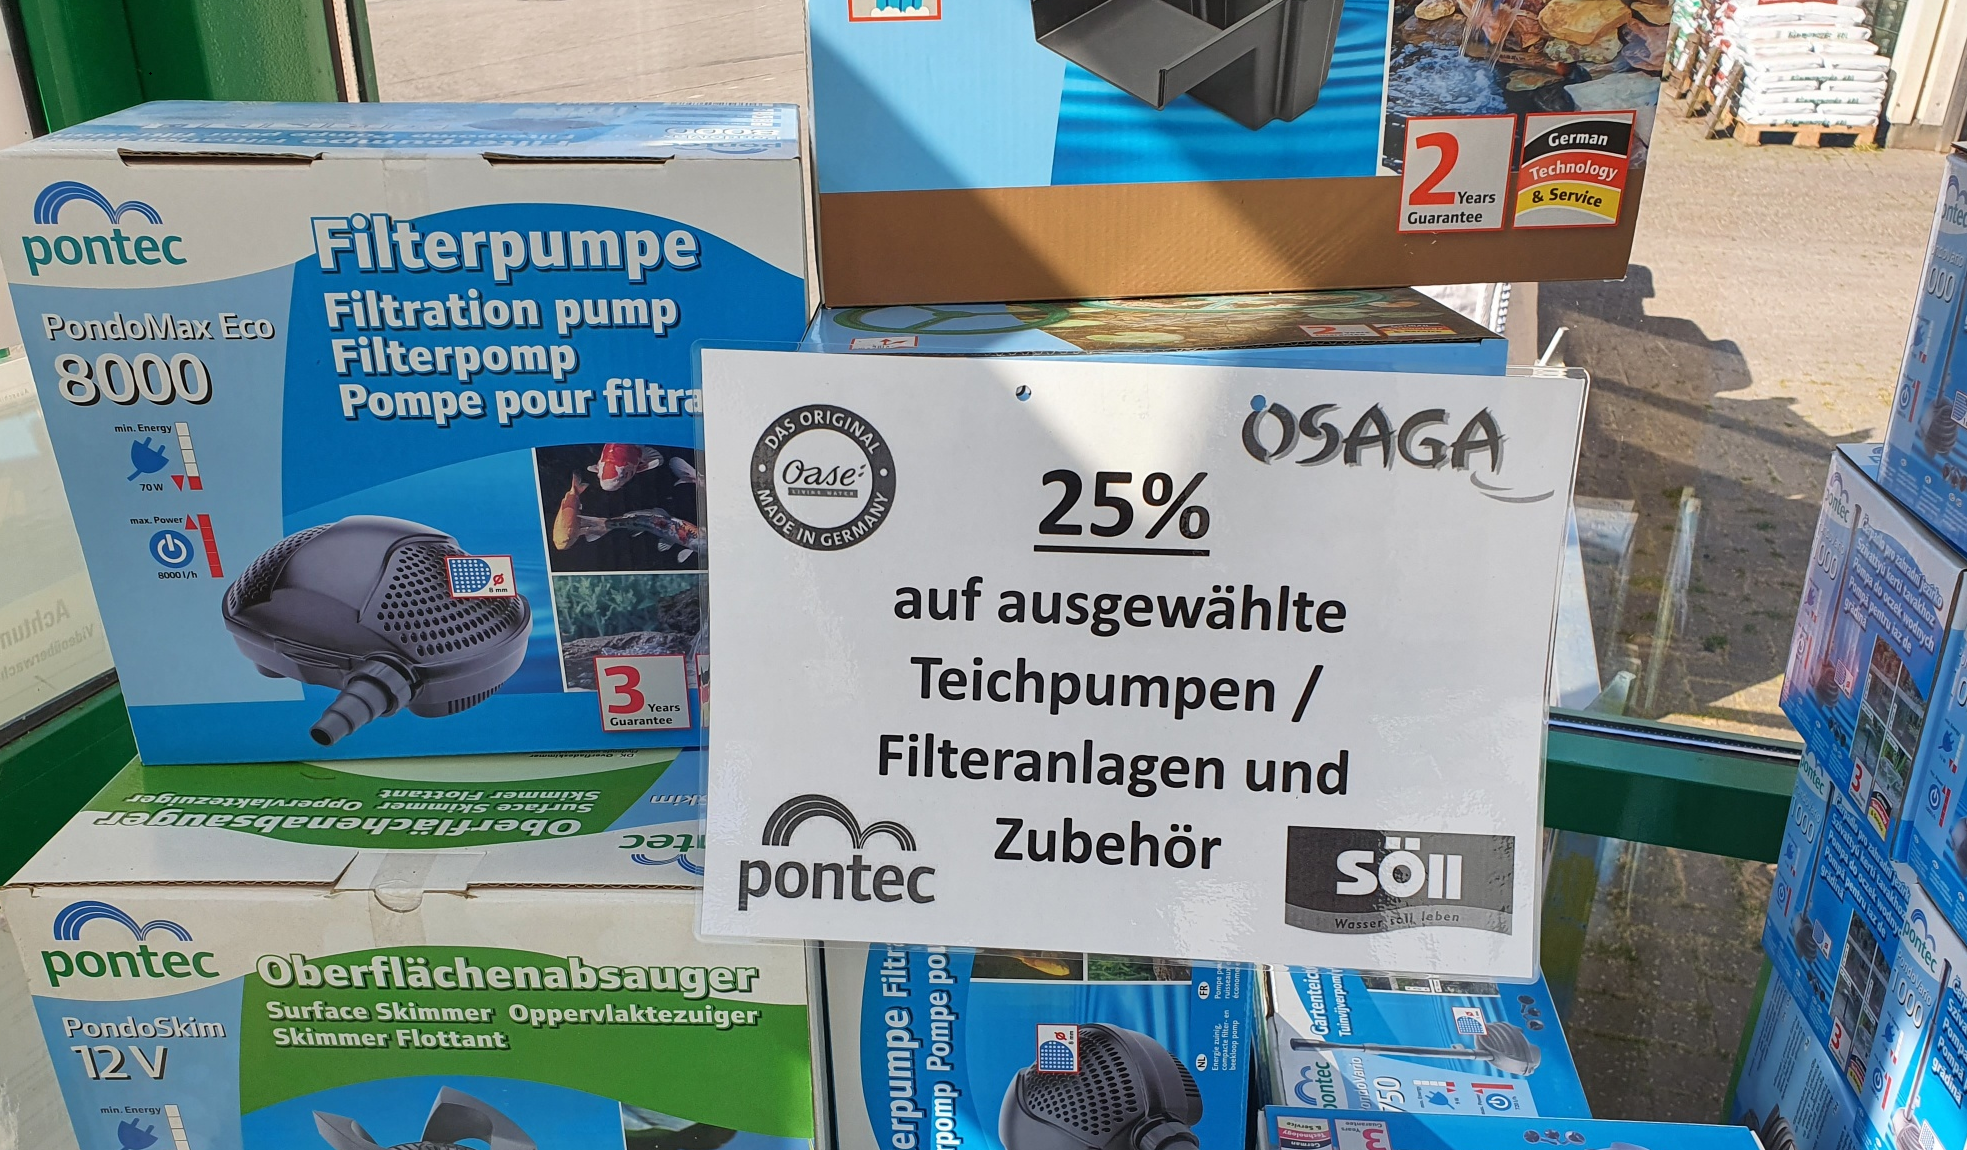 newsimgupload/Große Preisaktion im Kiebitzmarkt Hage auf Teichpumpem.png